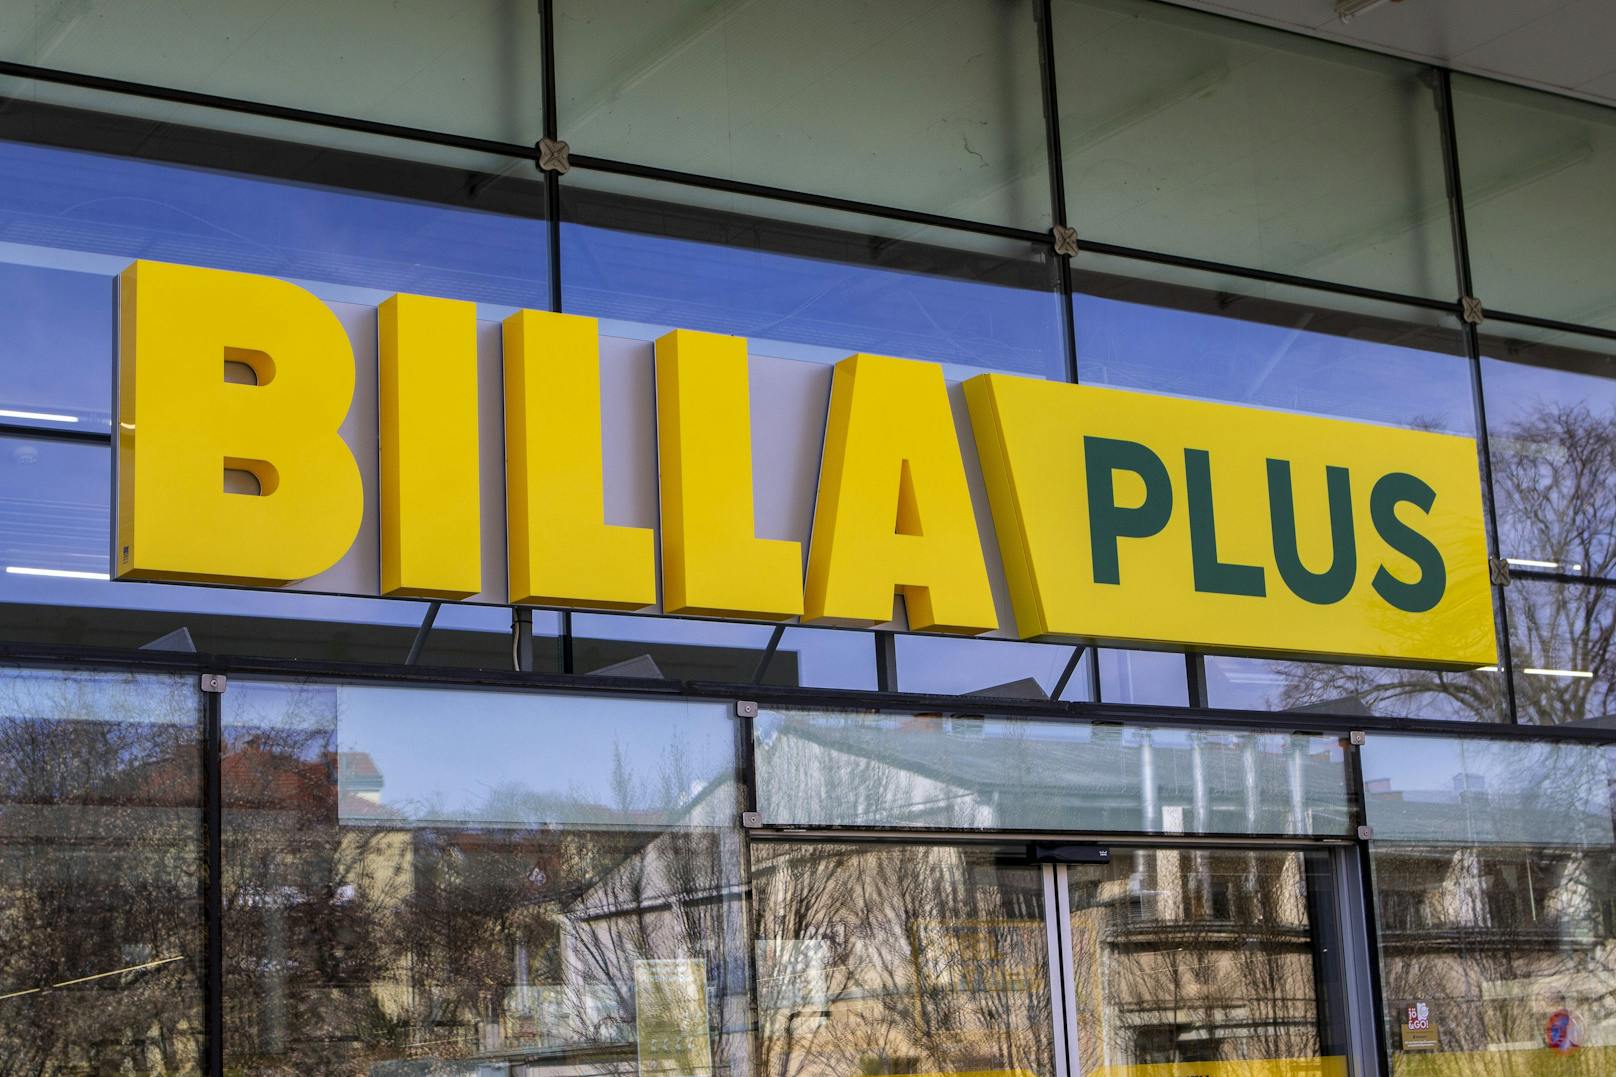 Die heimischen Merkur-Supermärkte heißen ab jetzt Billa Plus.